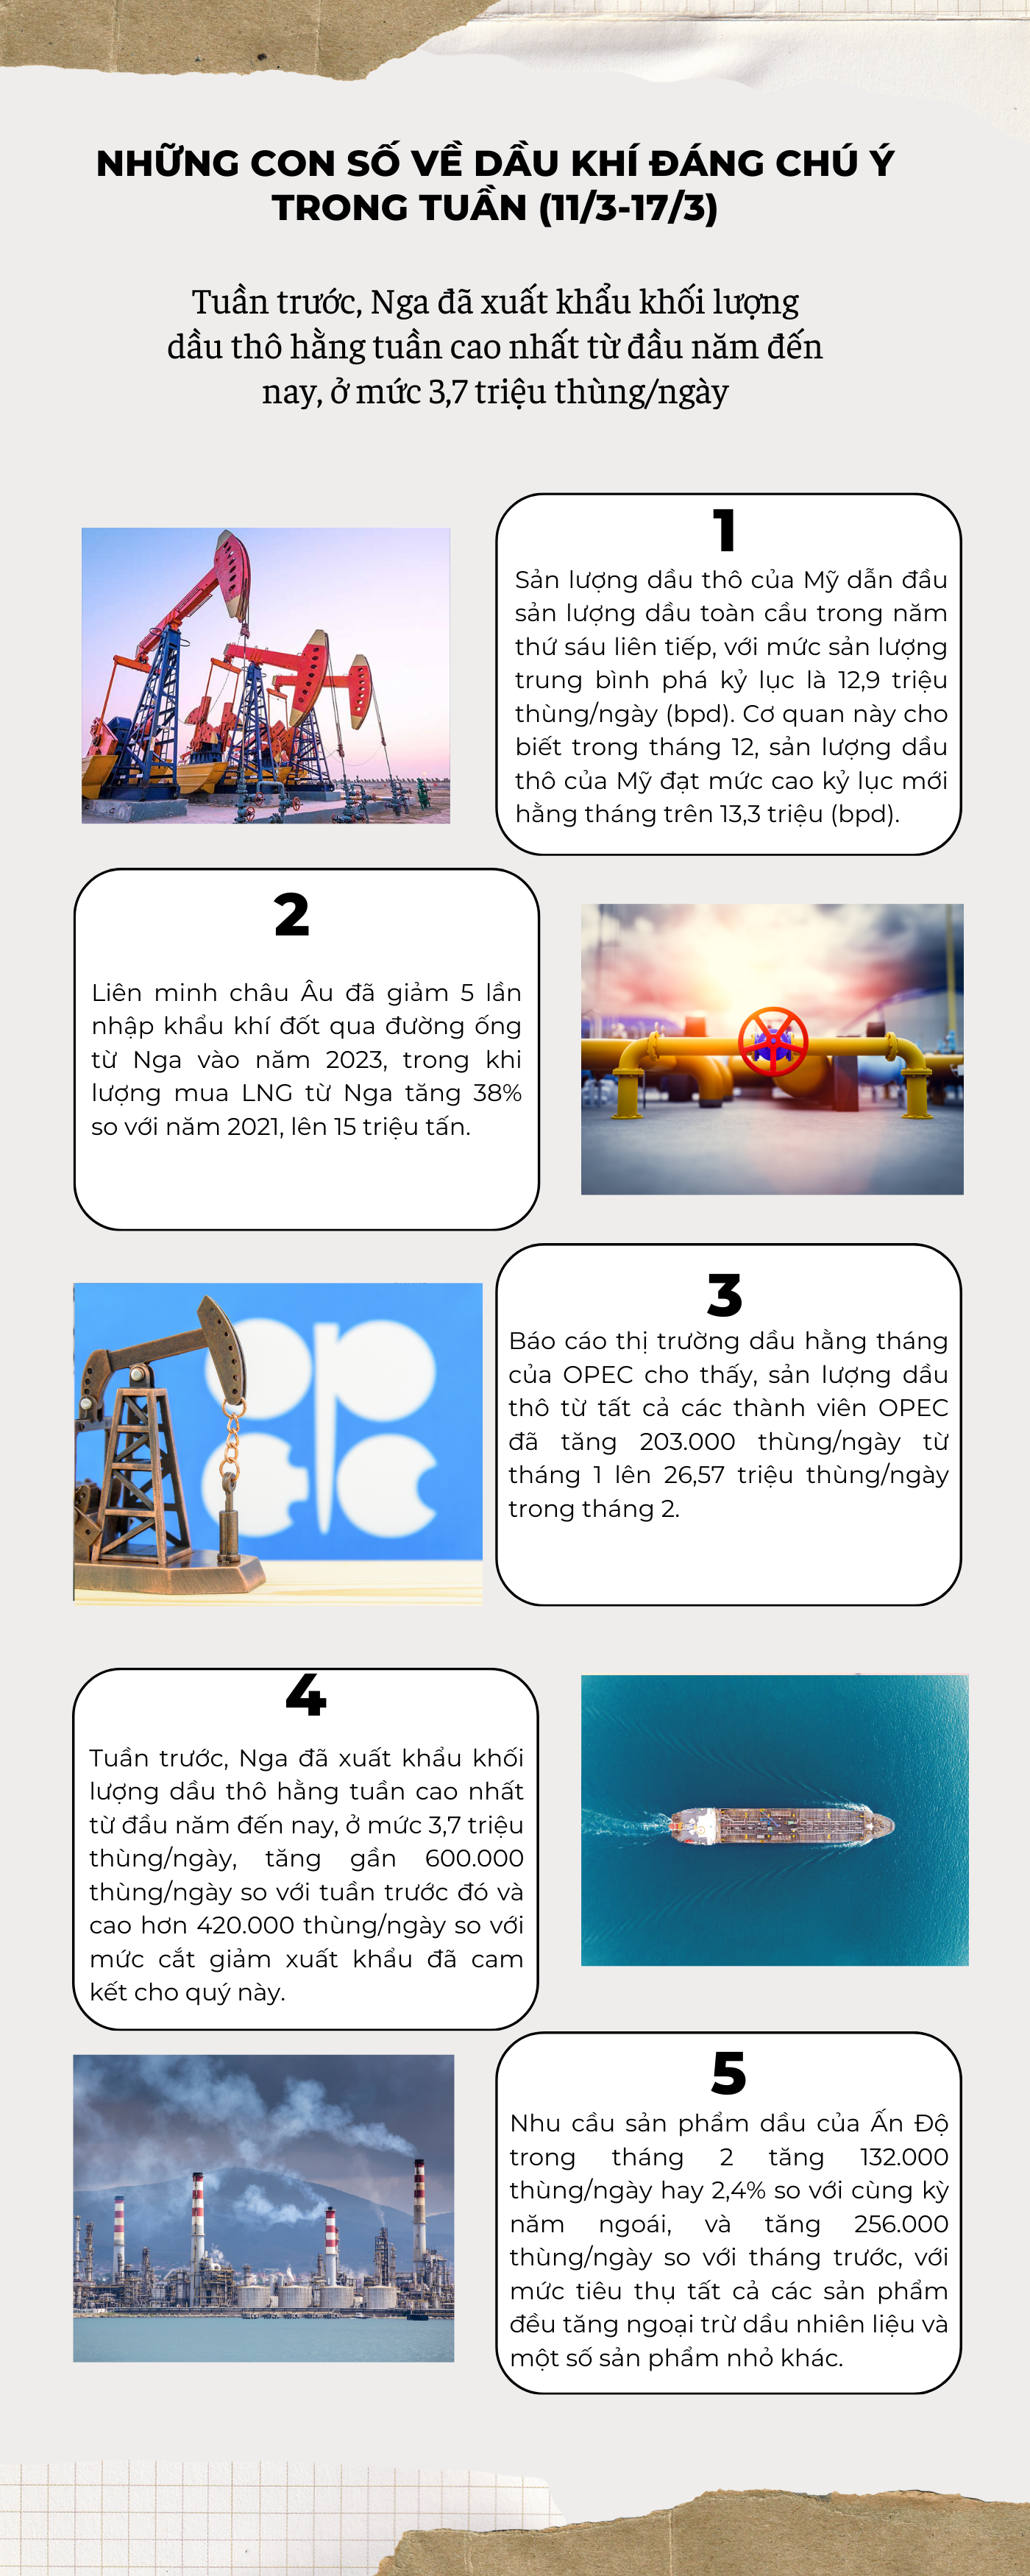 Những con số về dầu khí đáng chú ý trong tuần (11/3-17/3)